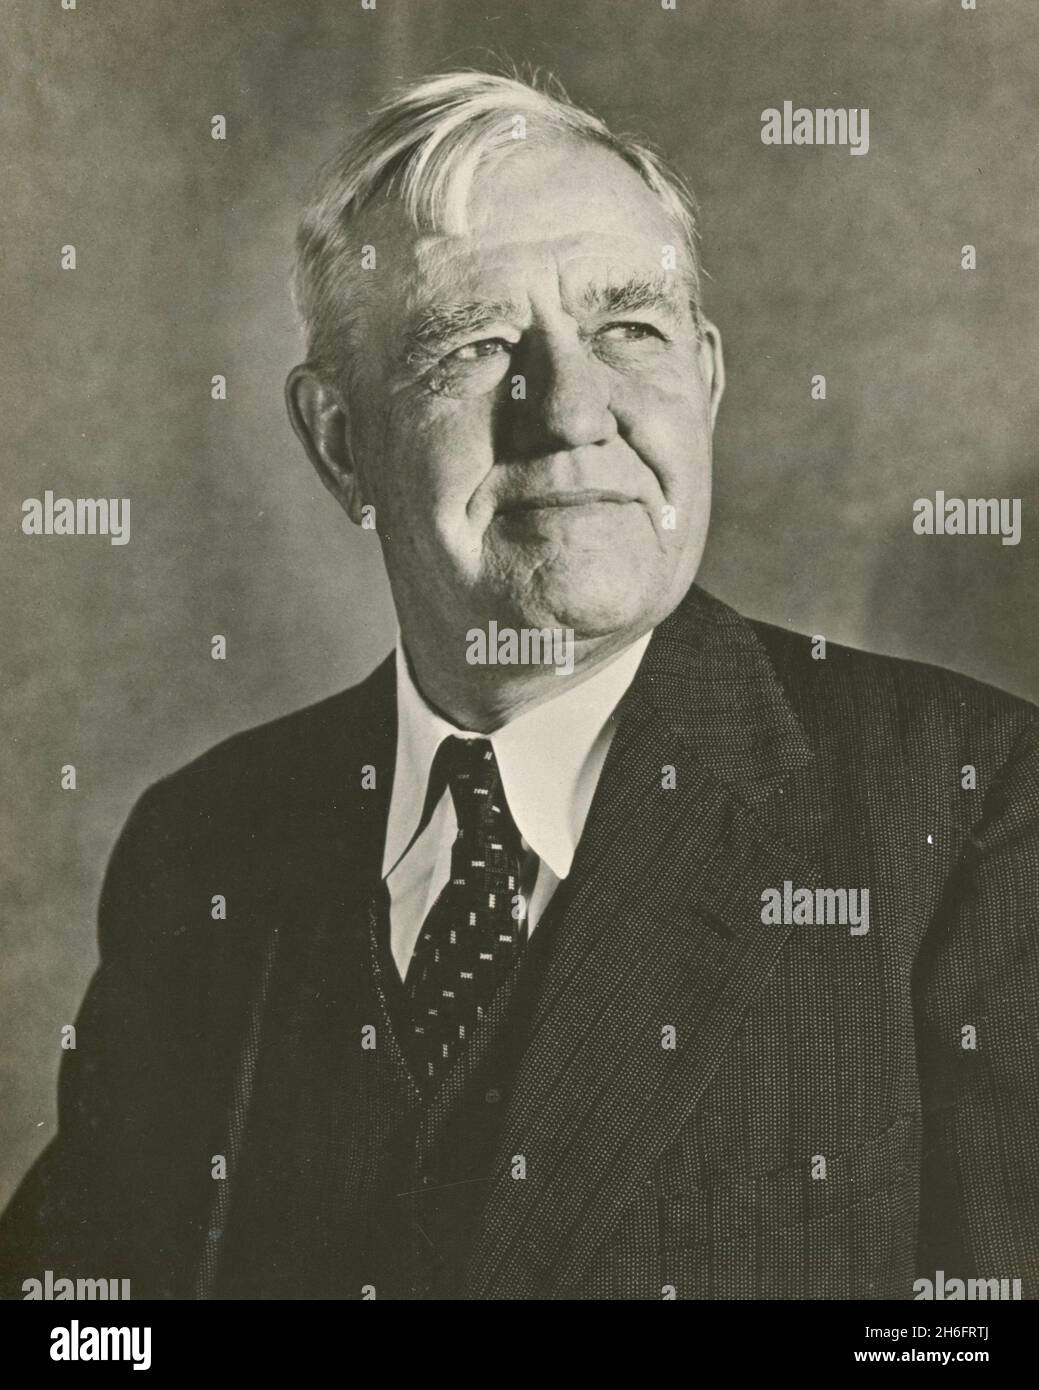 El líder y autor estadounidense del folclore J. Frank Dobie, Estados Unidos 1954 Foto de stock